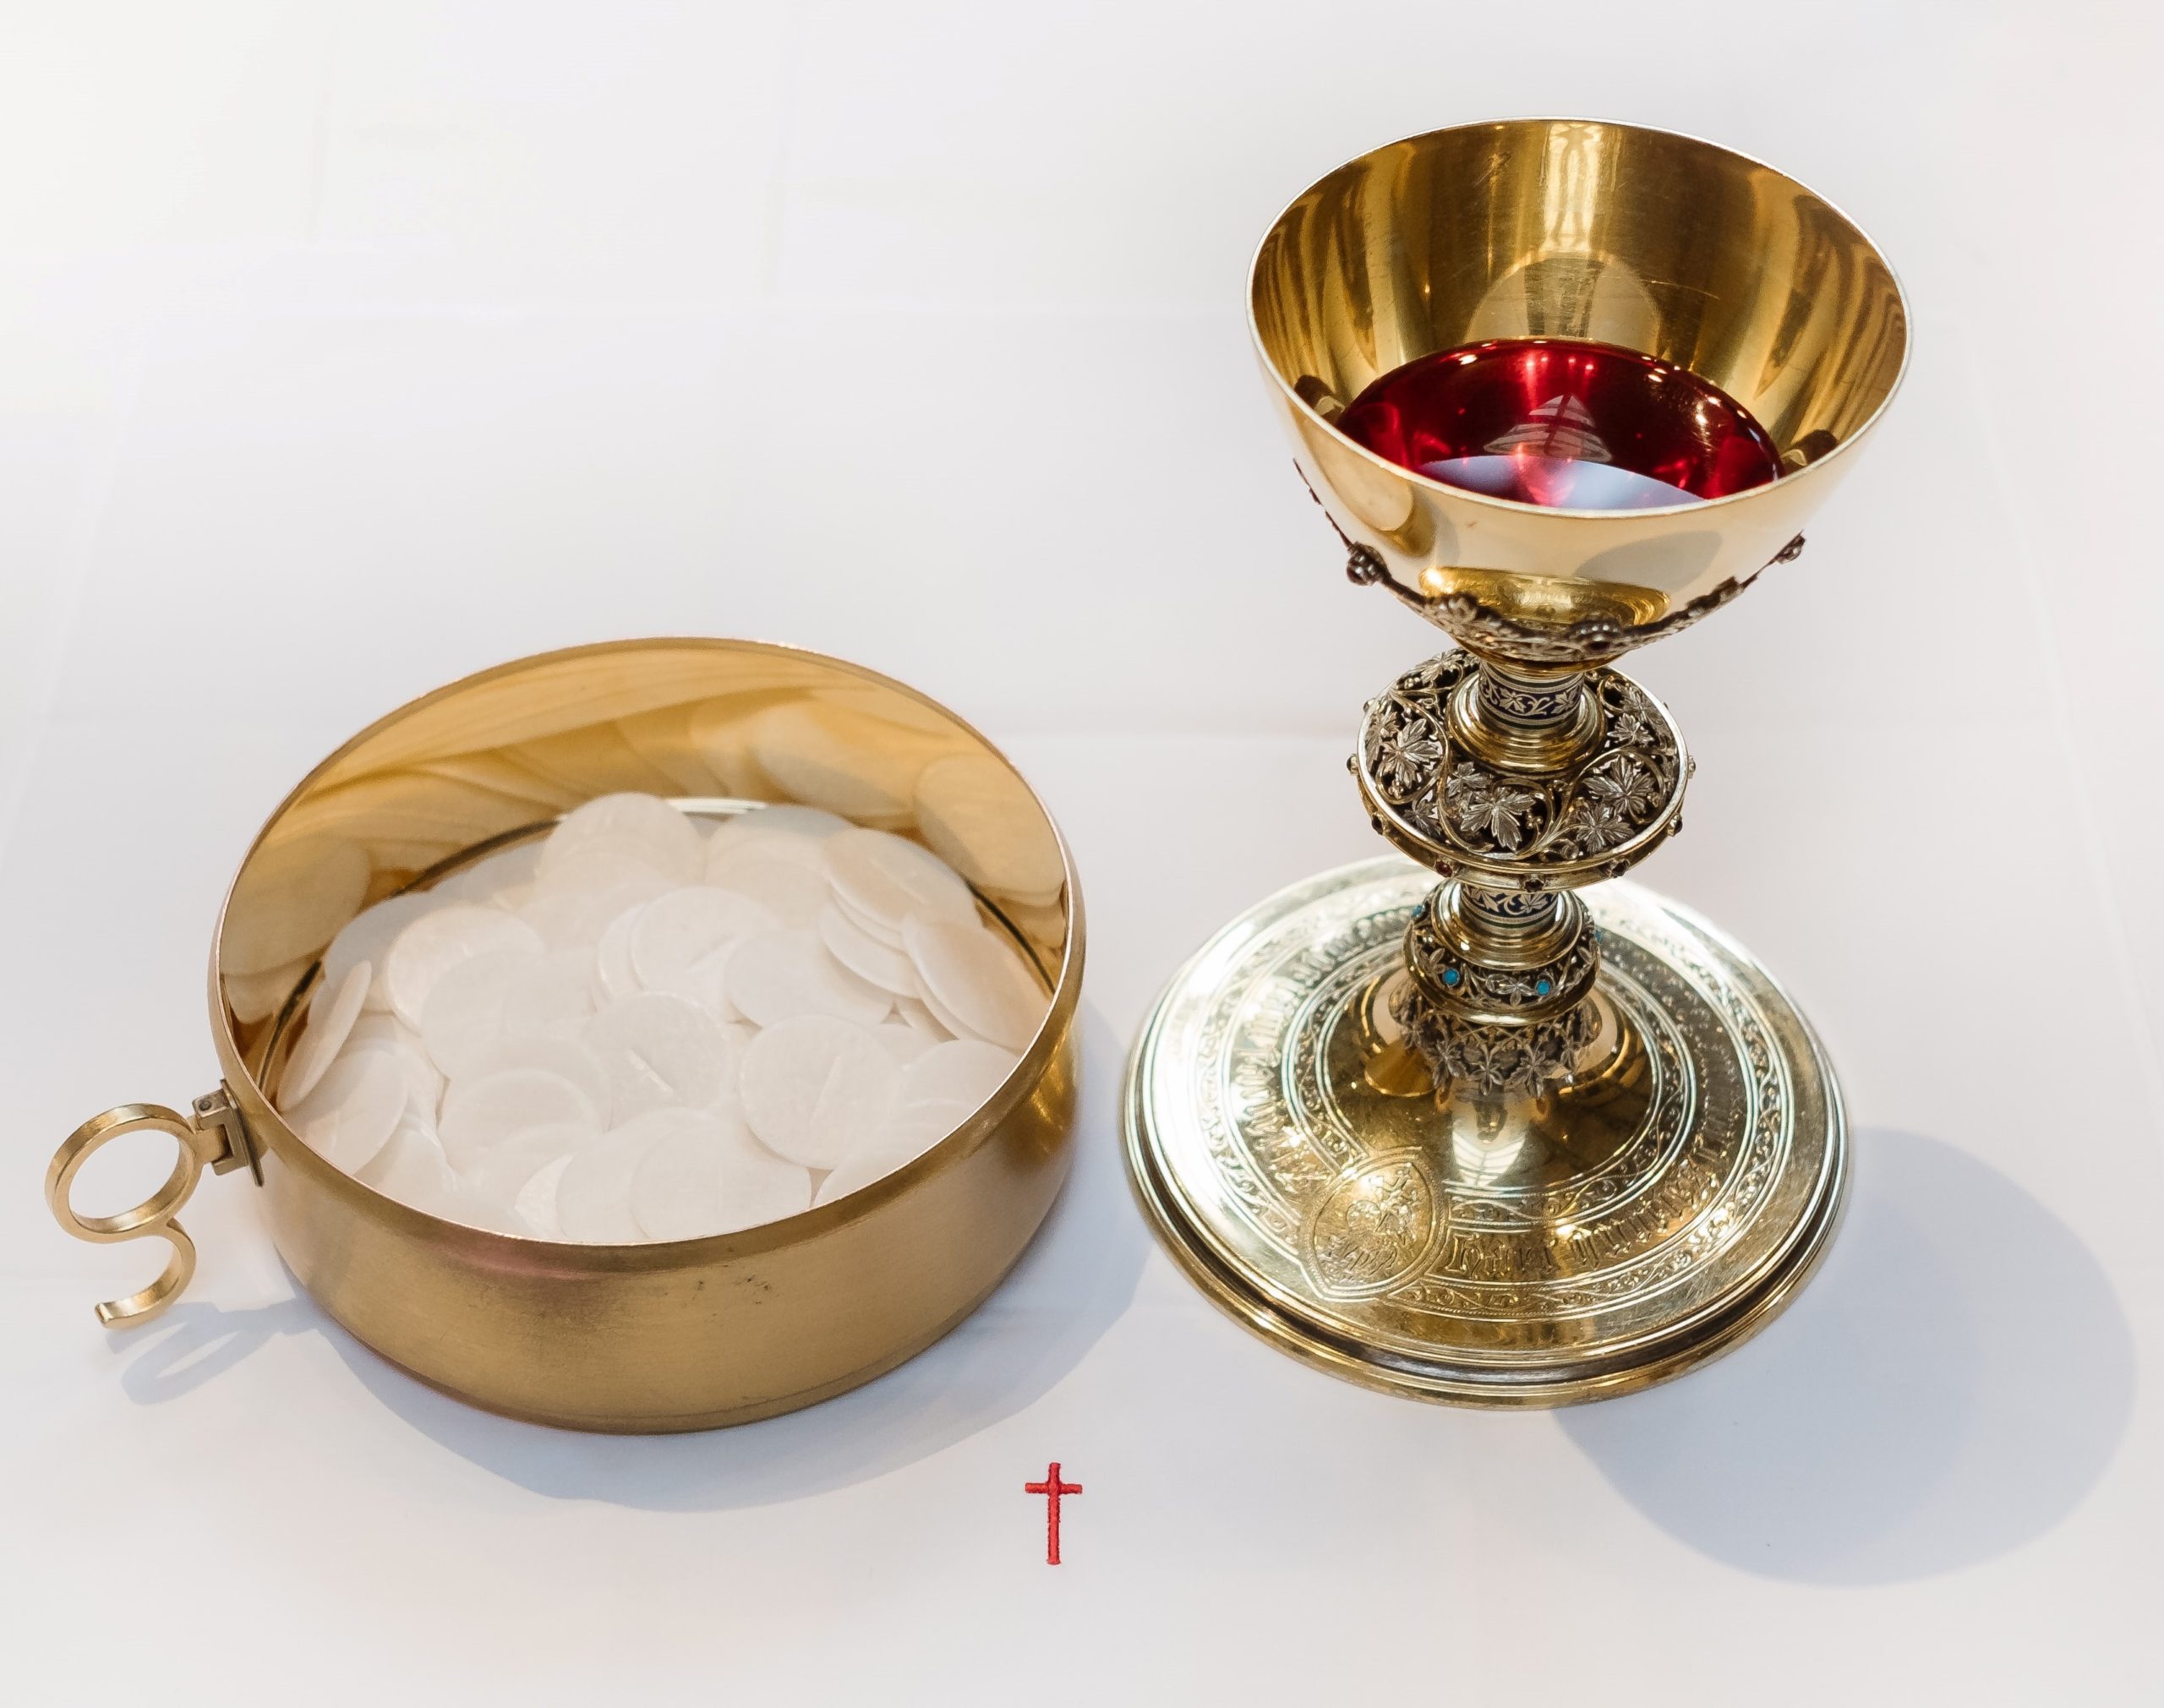 Catholic Sacraments
